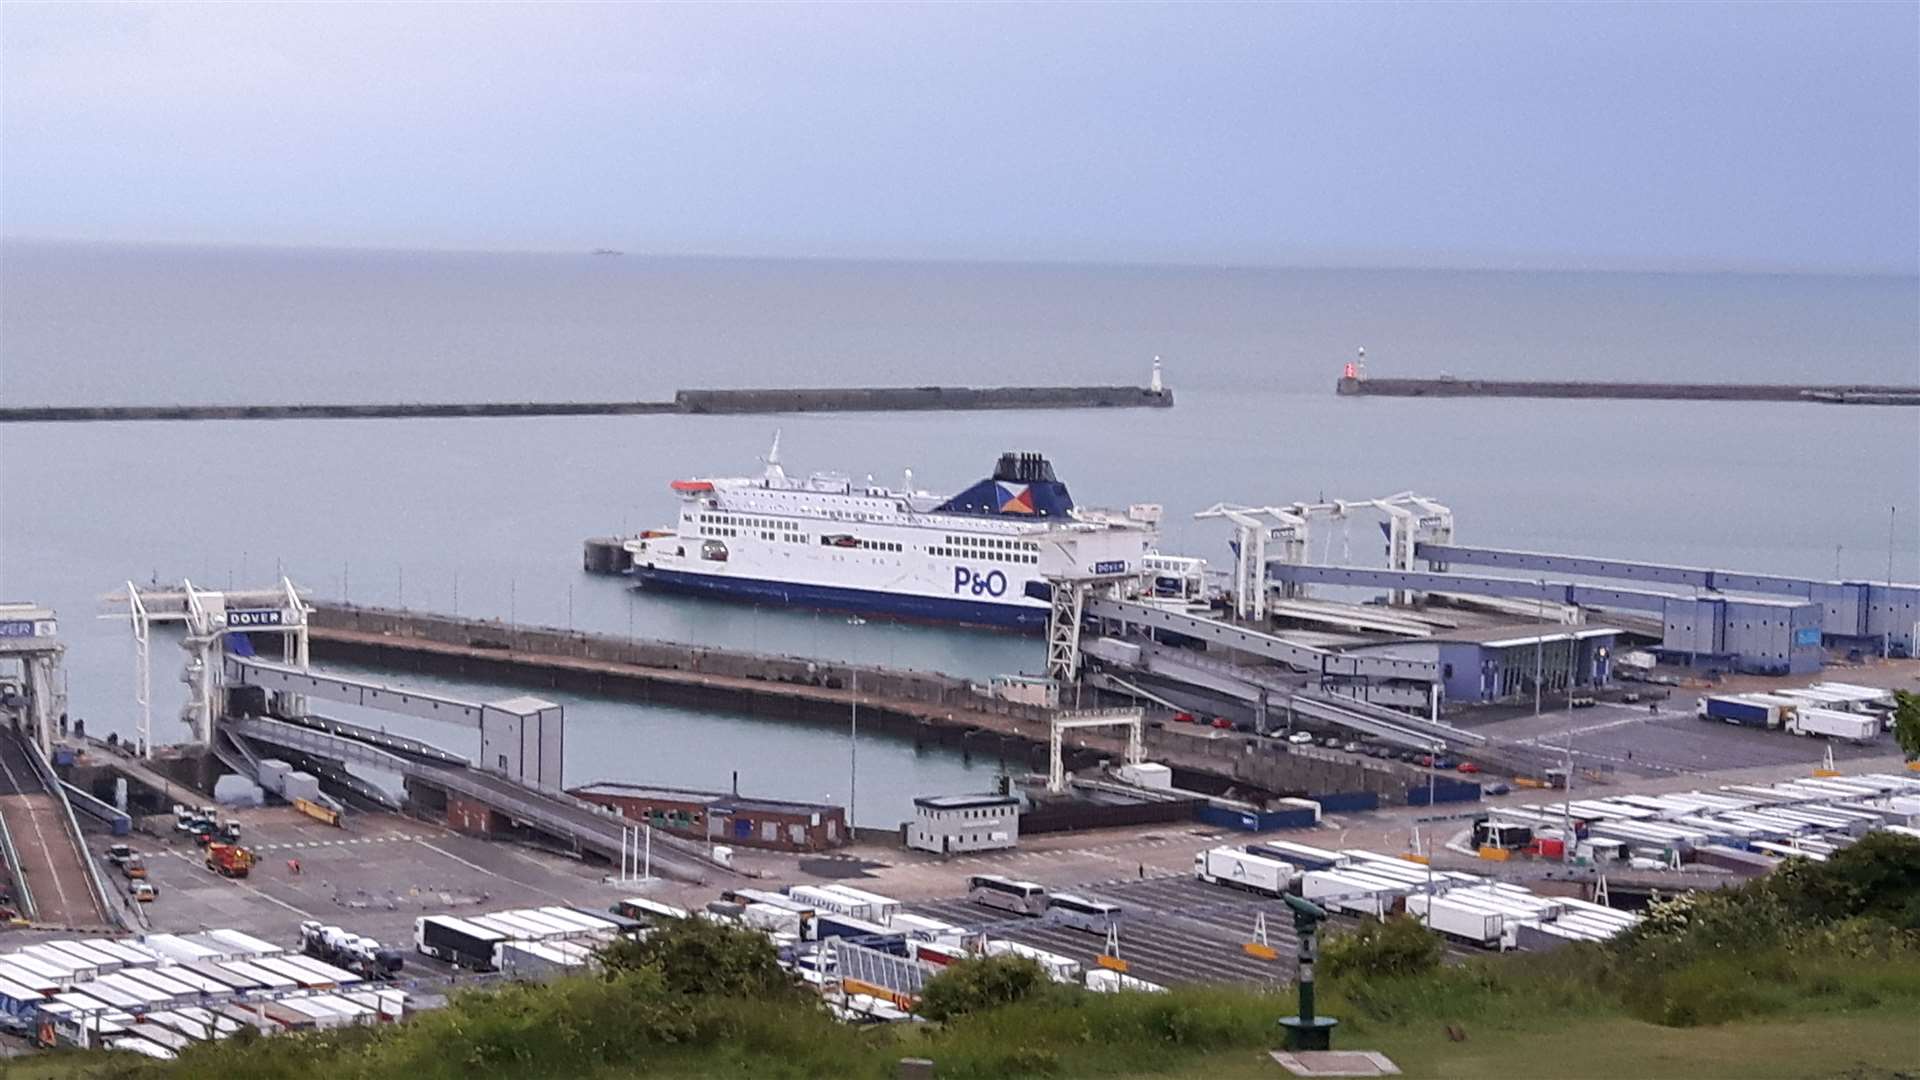 P&O Ferries needs £257 million to avoid collapse